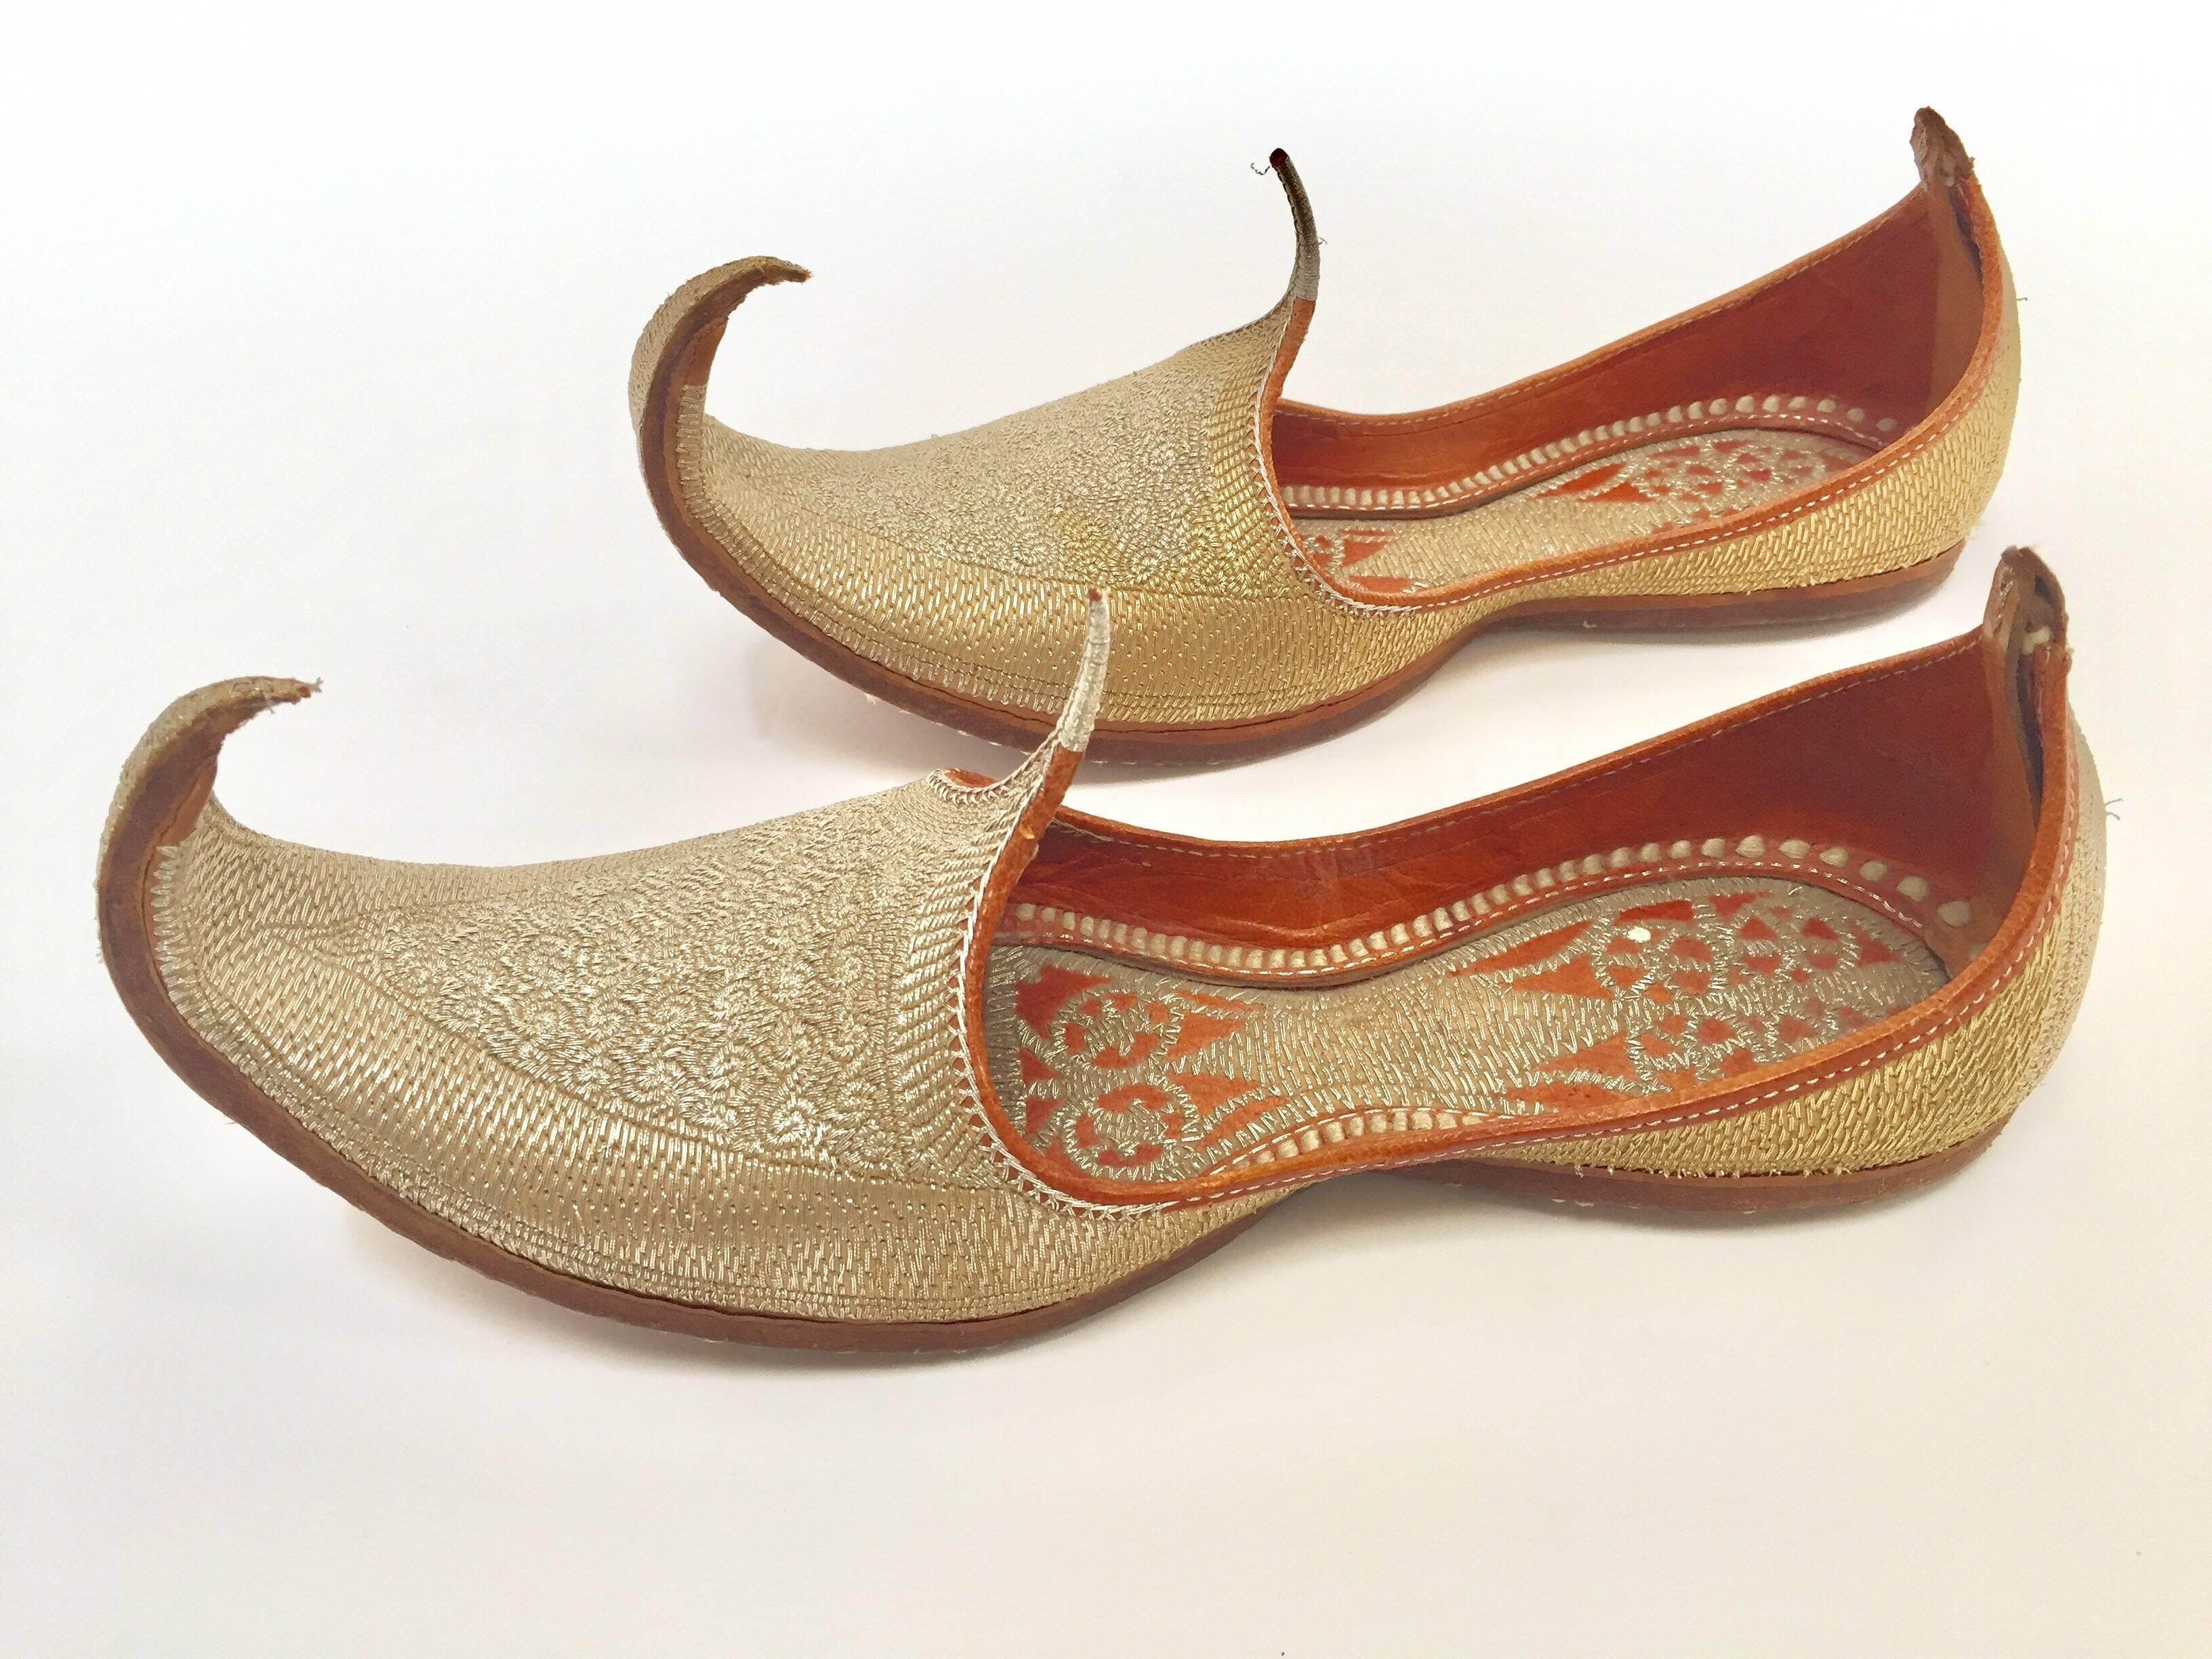 Une paire de rares chaussures en cuir de la fin du XIXe siècle, cousues et travaillées à la main, avec des fils métalliques dorés brodés à la main.
Magnifiques chaussures mogholes anciennes en cuir traditionnel indien islamique brodé d'or, adaptées